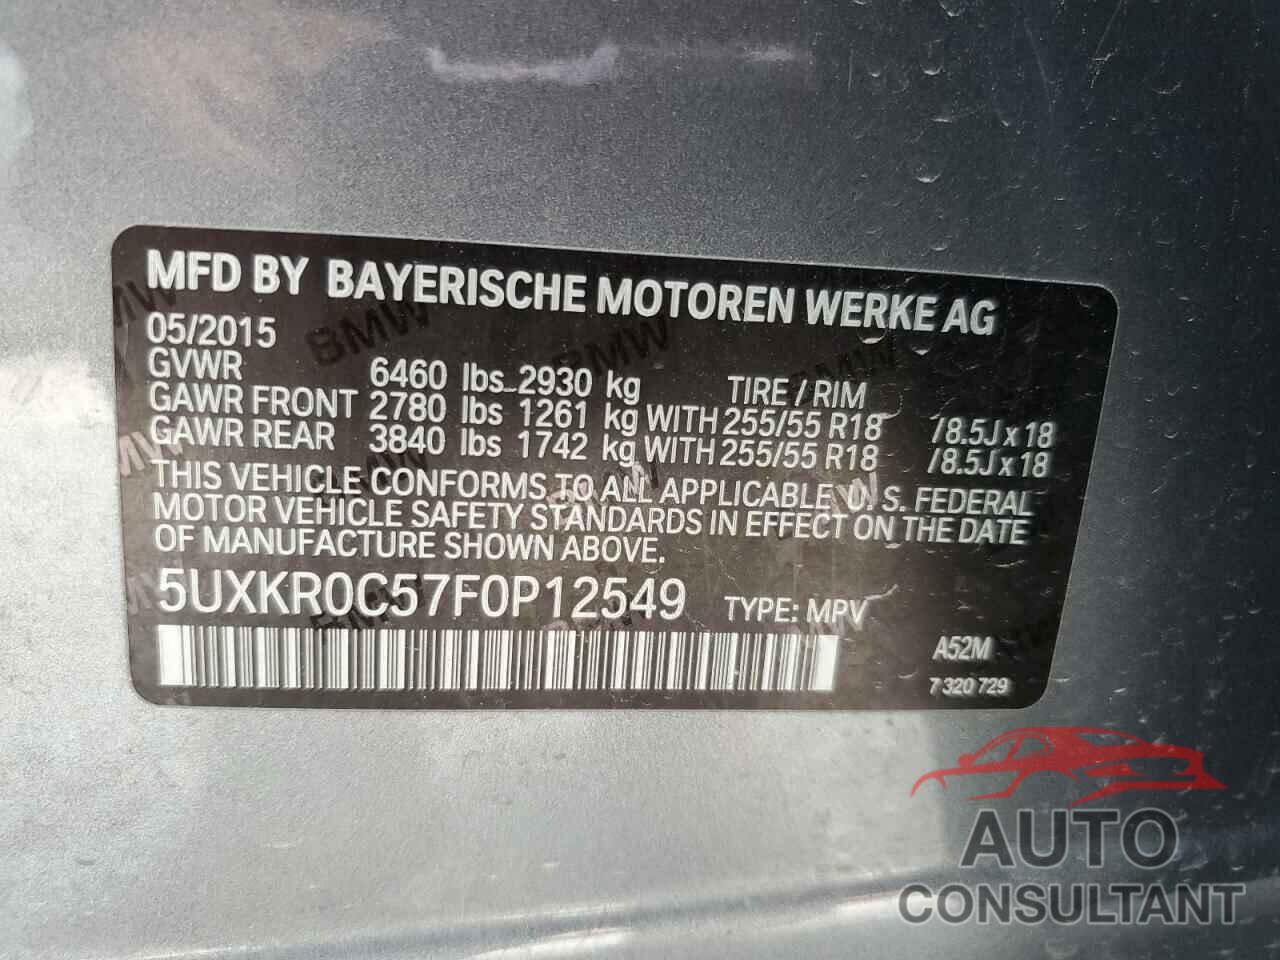 BMW X5 2015 - 5UXKR0C57F0P12549